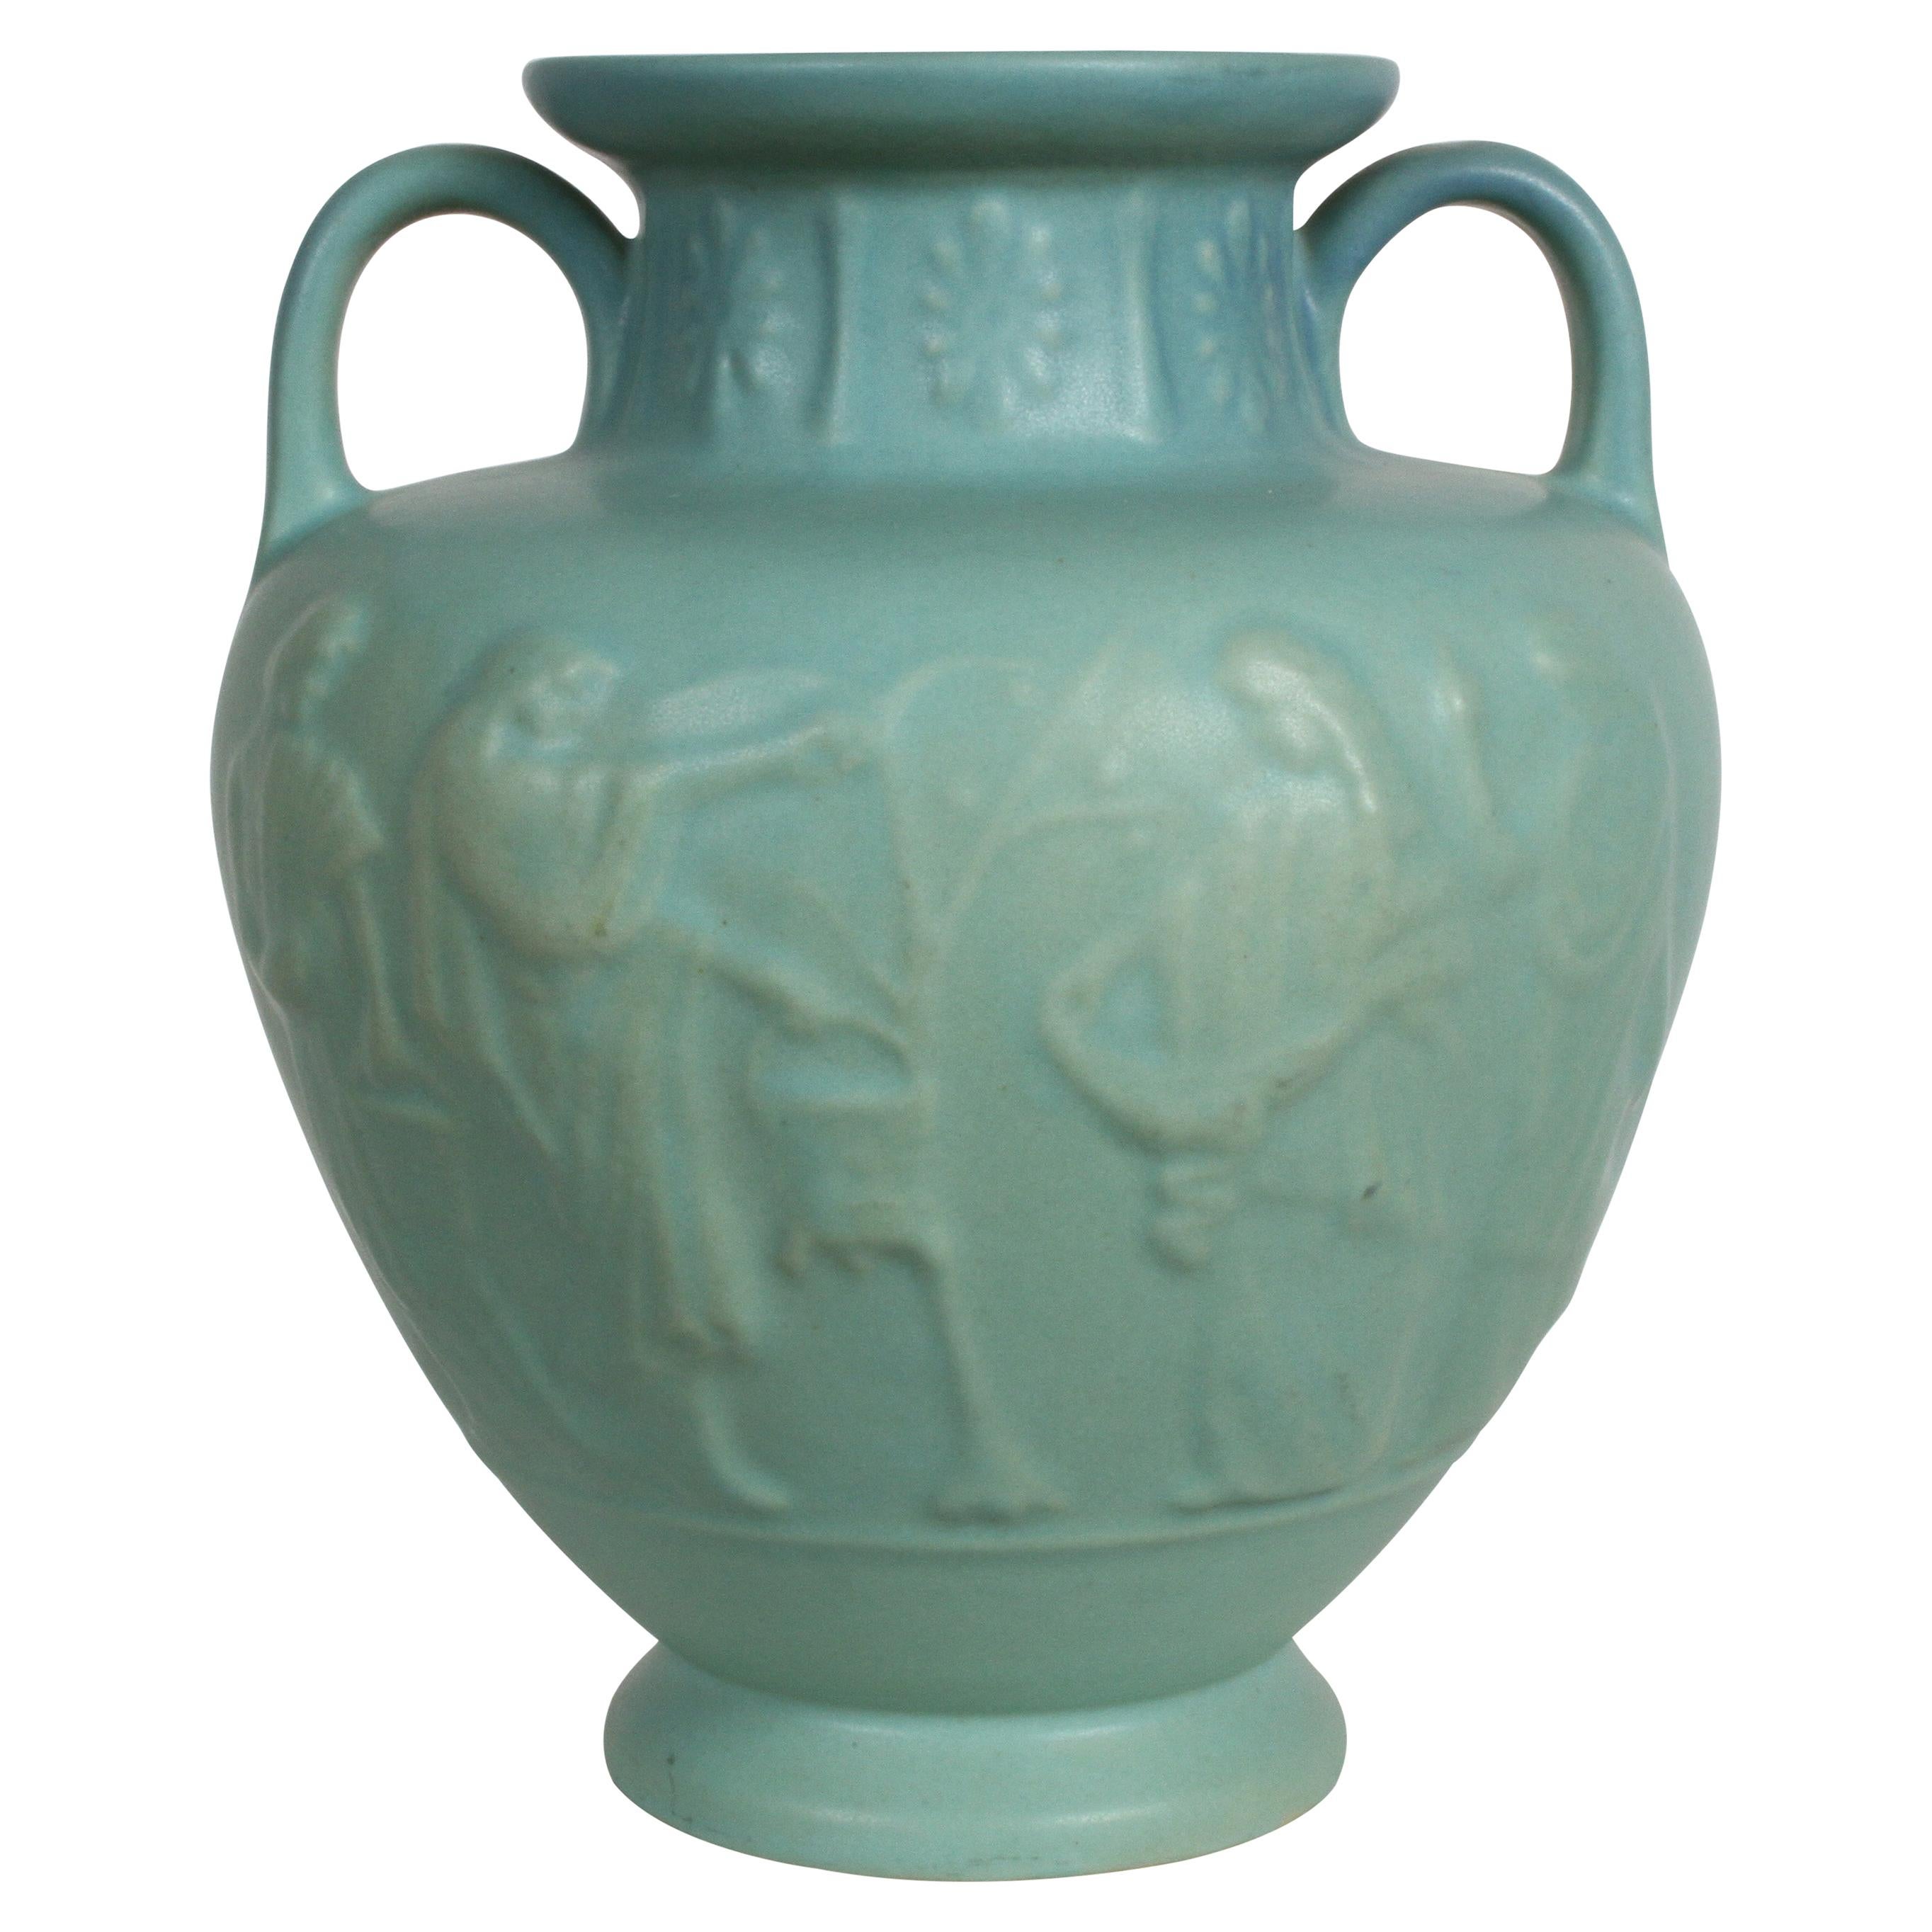 Van Briggle Turquoise Ming Glaze Grecian Urn or Vase Signed D.R. For Sale